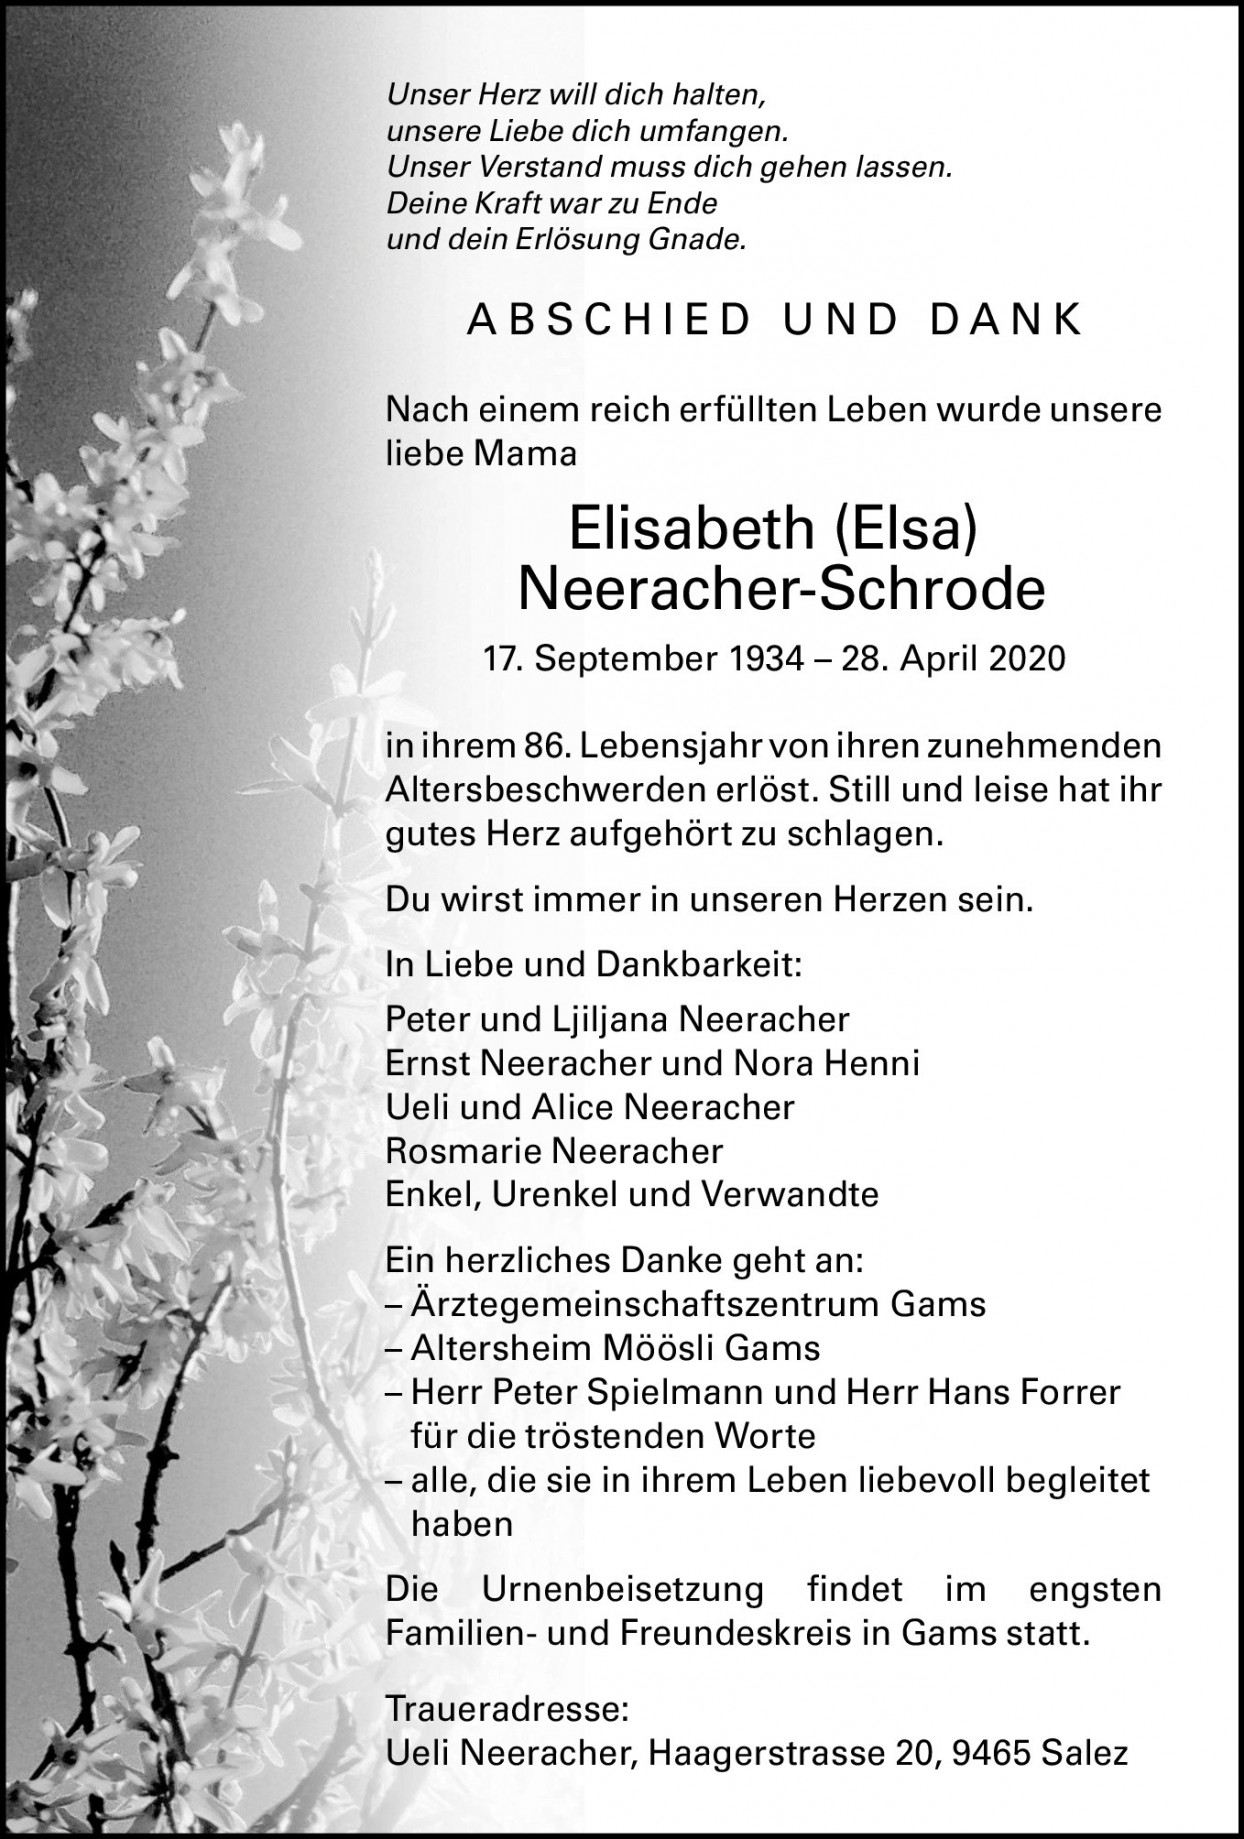 Elisabeth Neeracher-Schrode